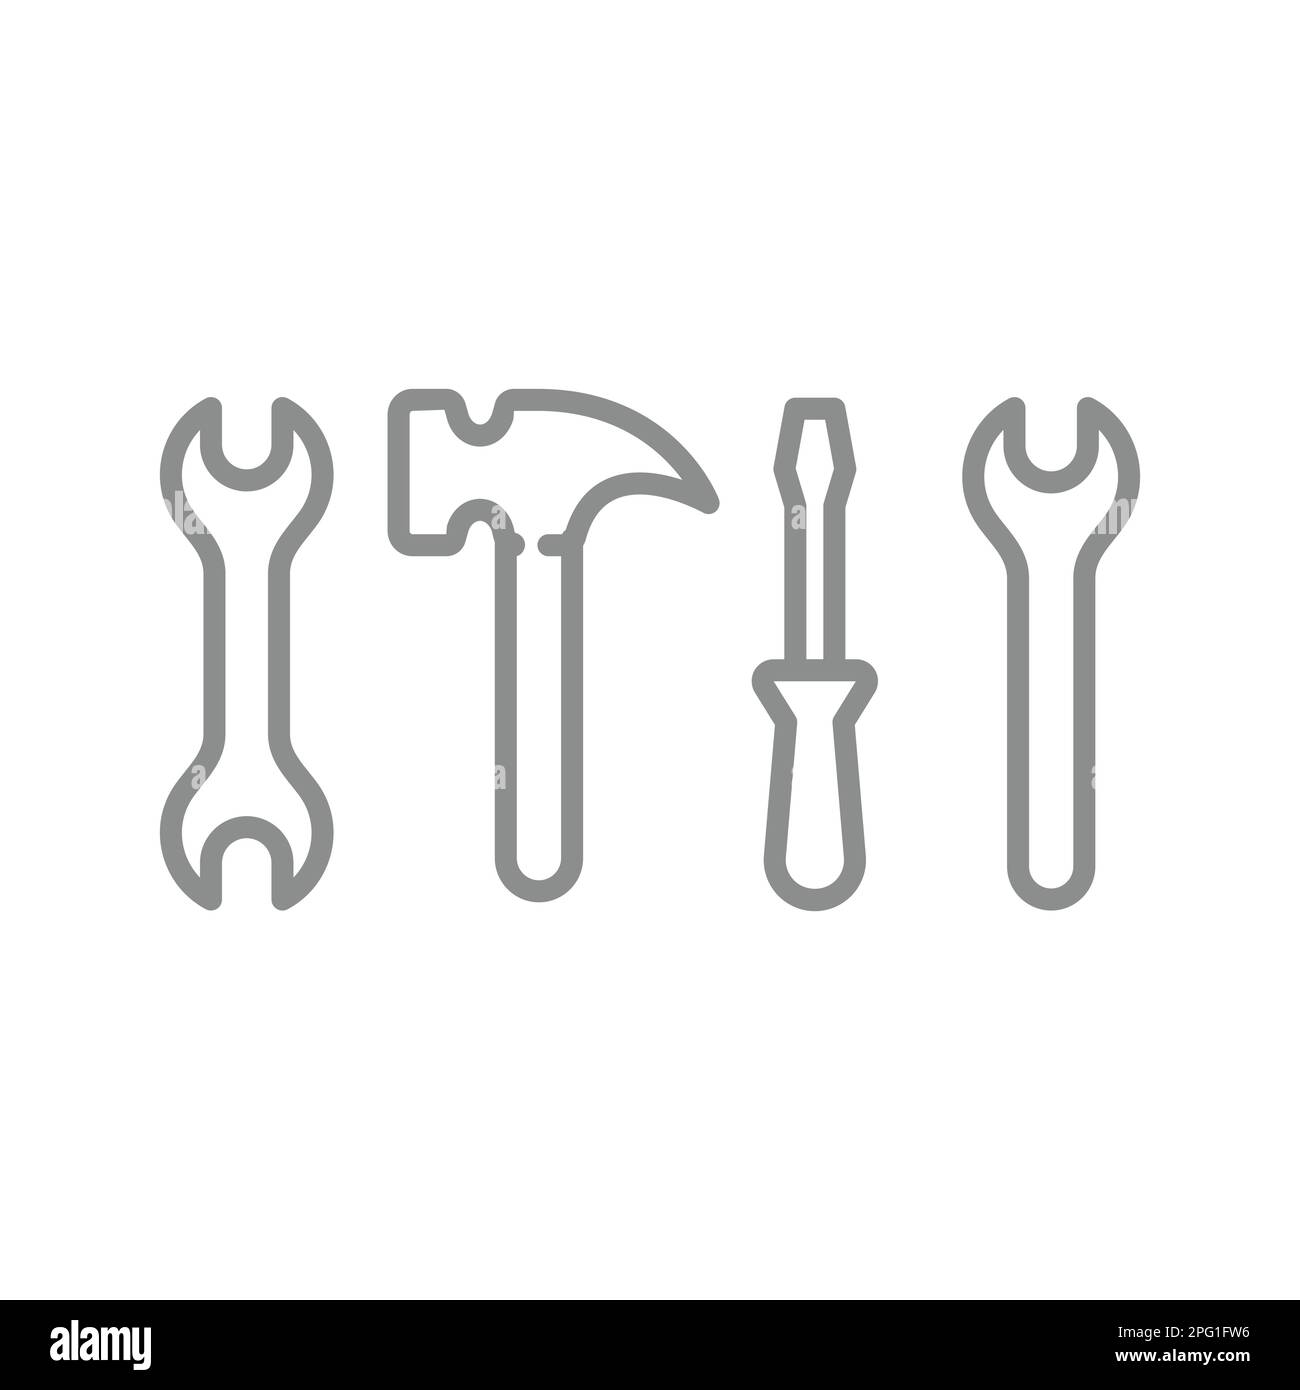 Chiave o chiave e martello, set di icone linea cacciavite. Icone delineate degli strumenti hardware. Illustrazione Vettoriale